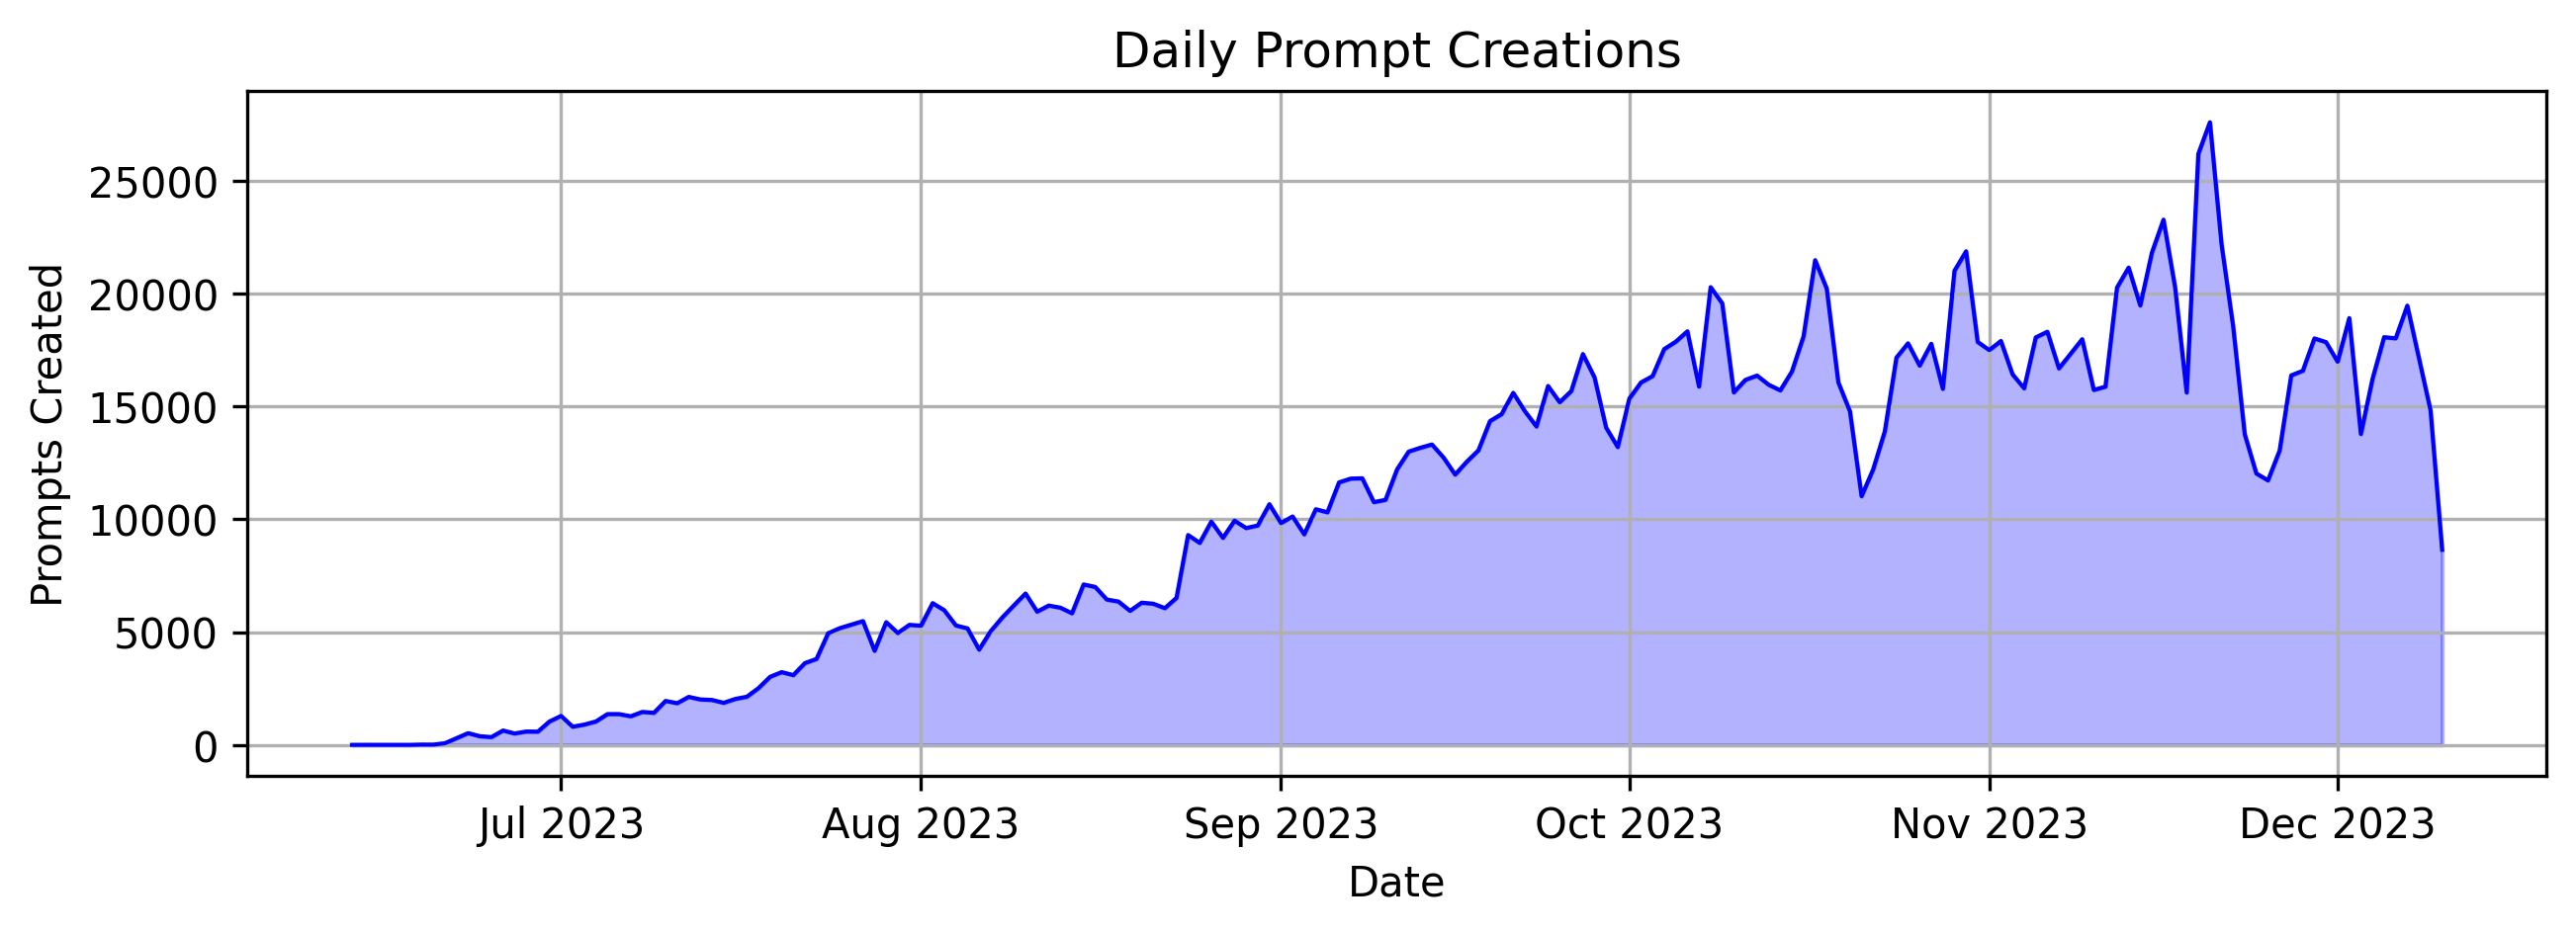 图 5：展示了随时间推移每日提示创建数量的图表。目前，通常每天约有 15-20K 个提示被创建。